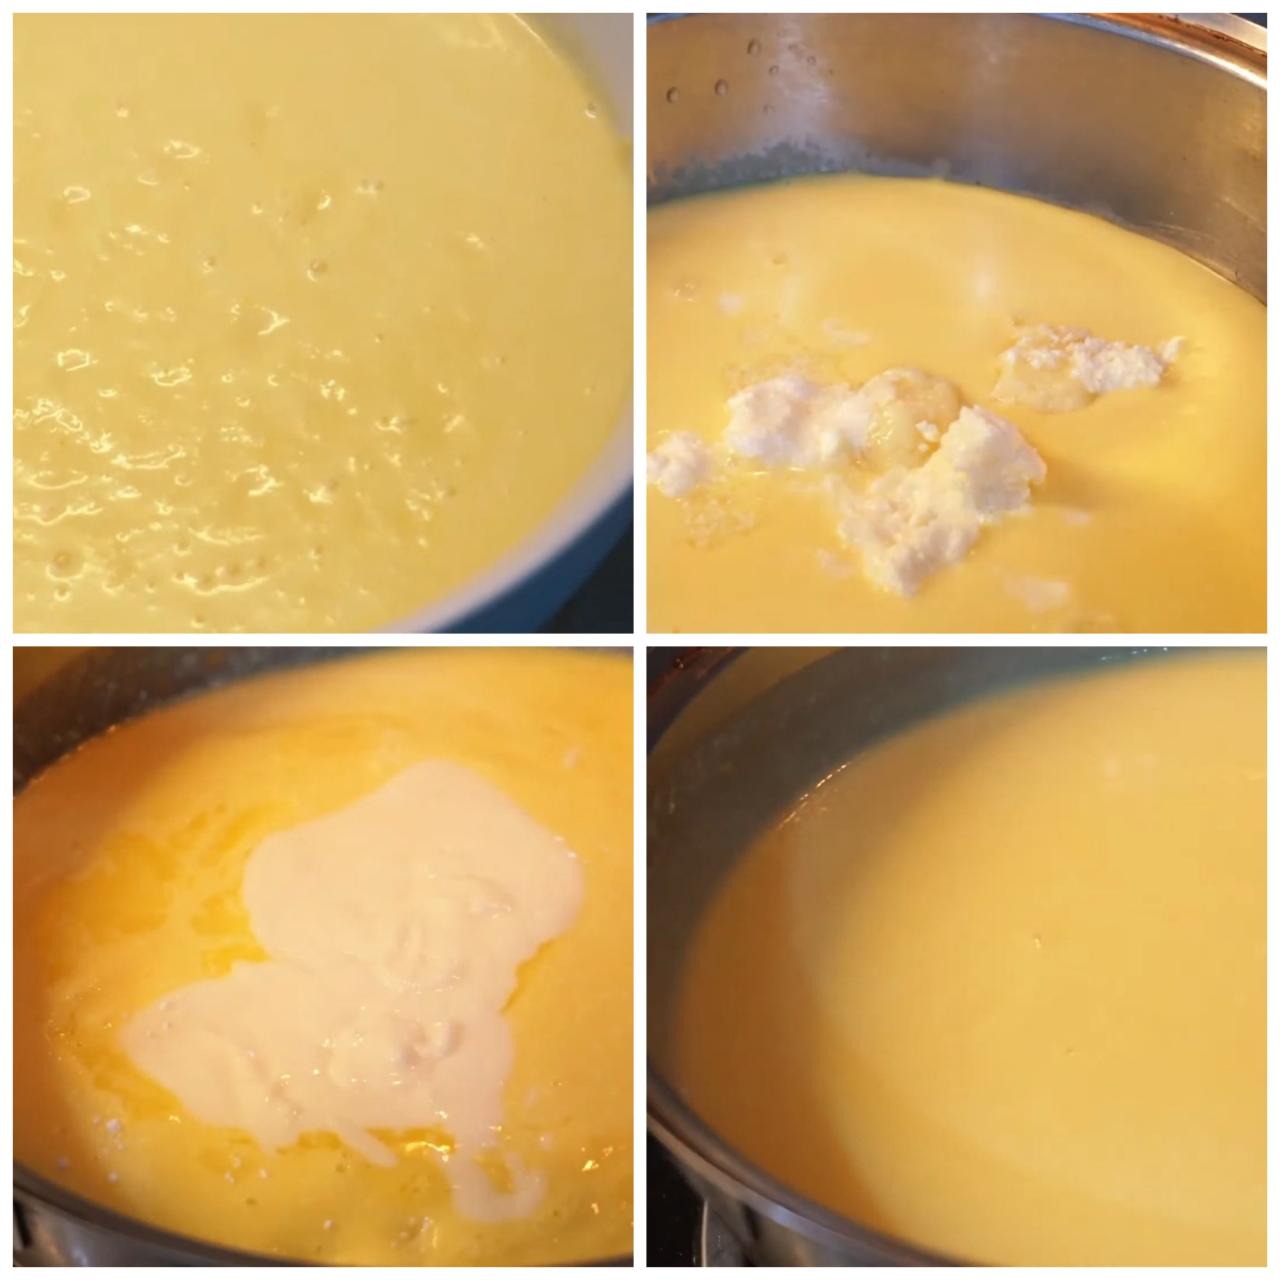 Bắc nồi lên bếp, cho vào phần bắp xay, bơ lạt, cream cheese khuấy đều hỗn hợp trên lửa nhỏ